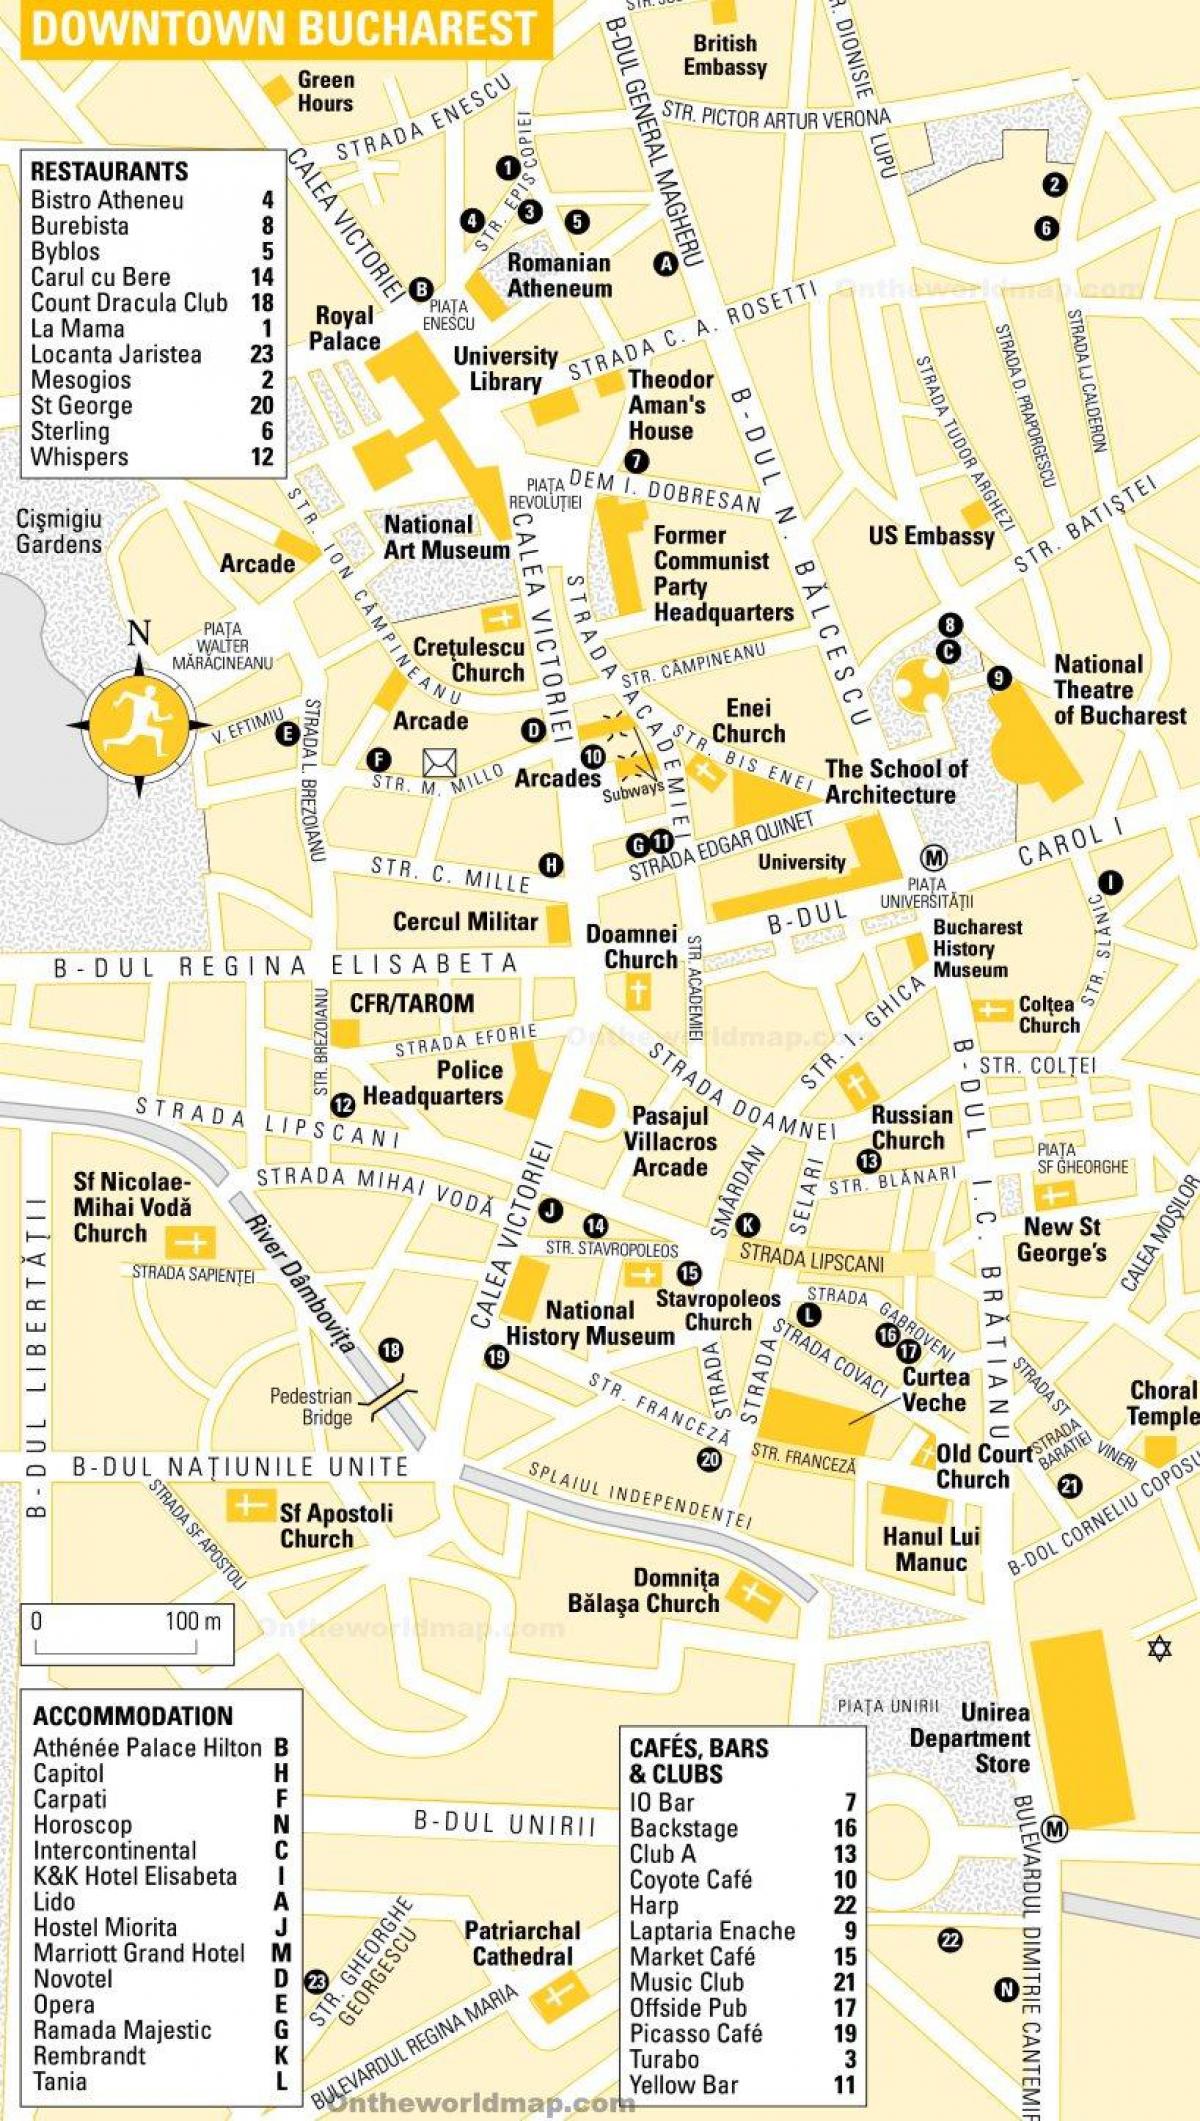 Mapa do centro da cidade de Bucareste